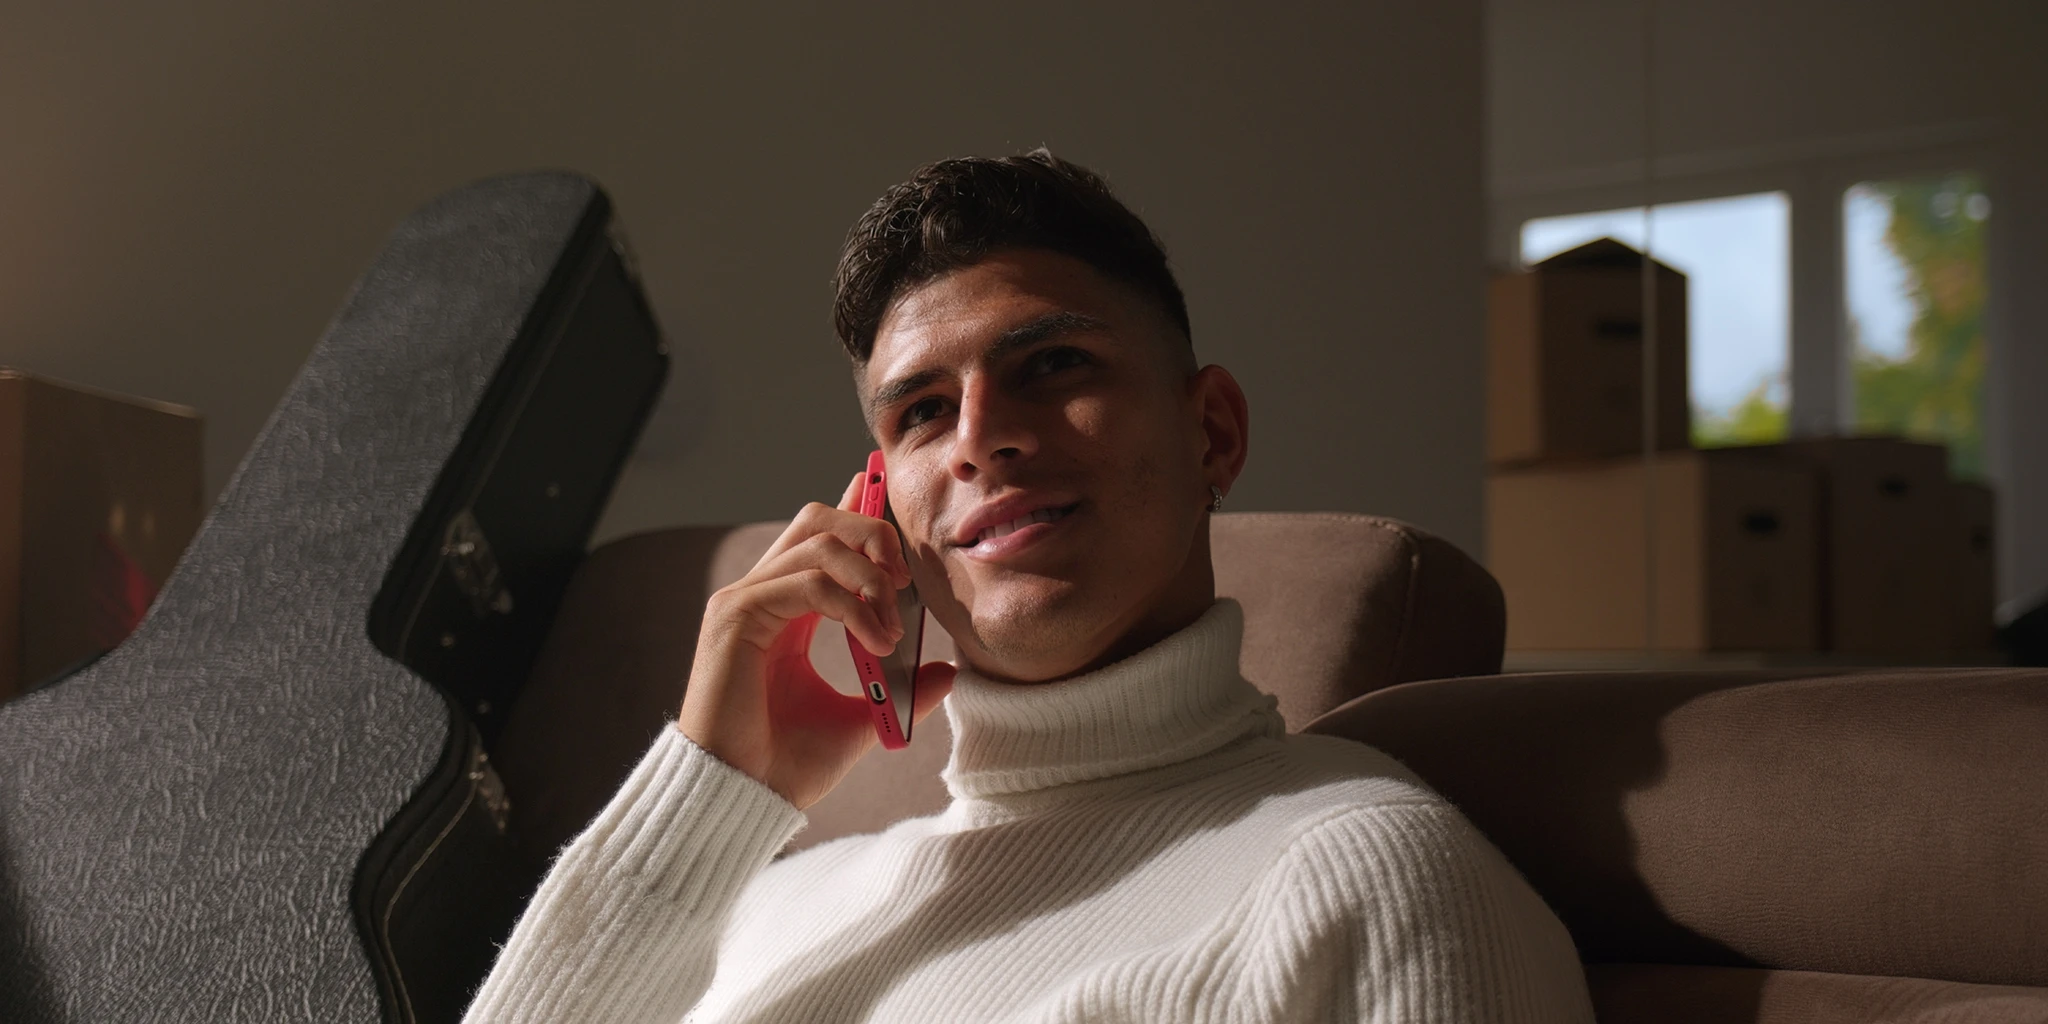 Ein junger Fußballer, Piero Hincapié, sitzt auf seinem Sofa und telefoniert. Er trägt einen weißen Pullover. Neben ihm steht ein Gitarrenkoffer und im Hintergrund sind Umzugskartons zu sehen.